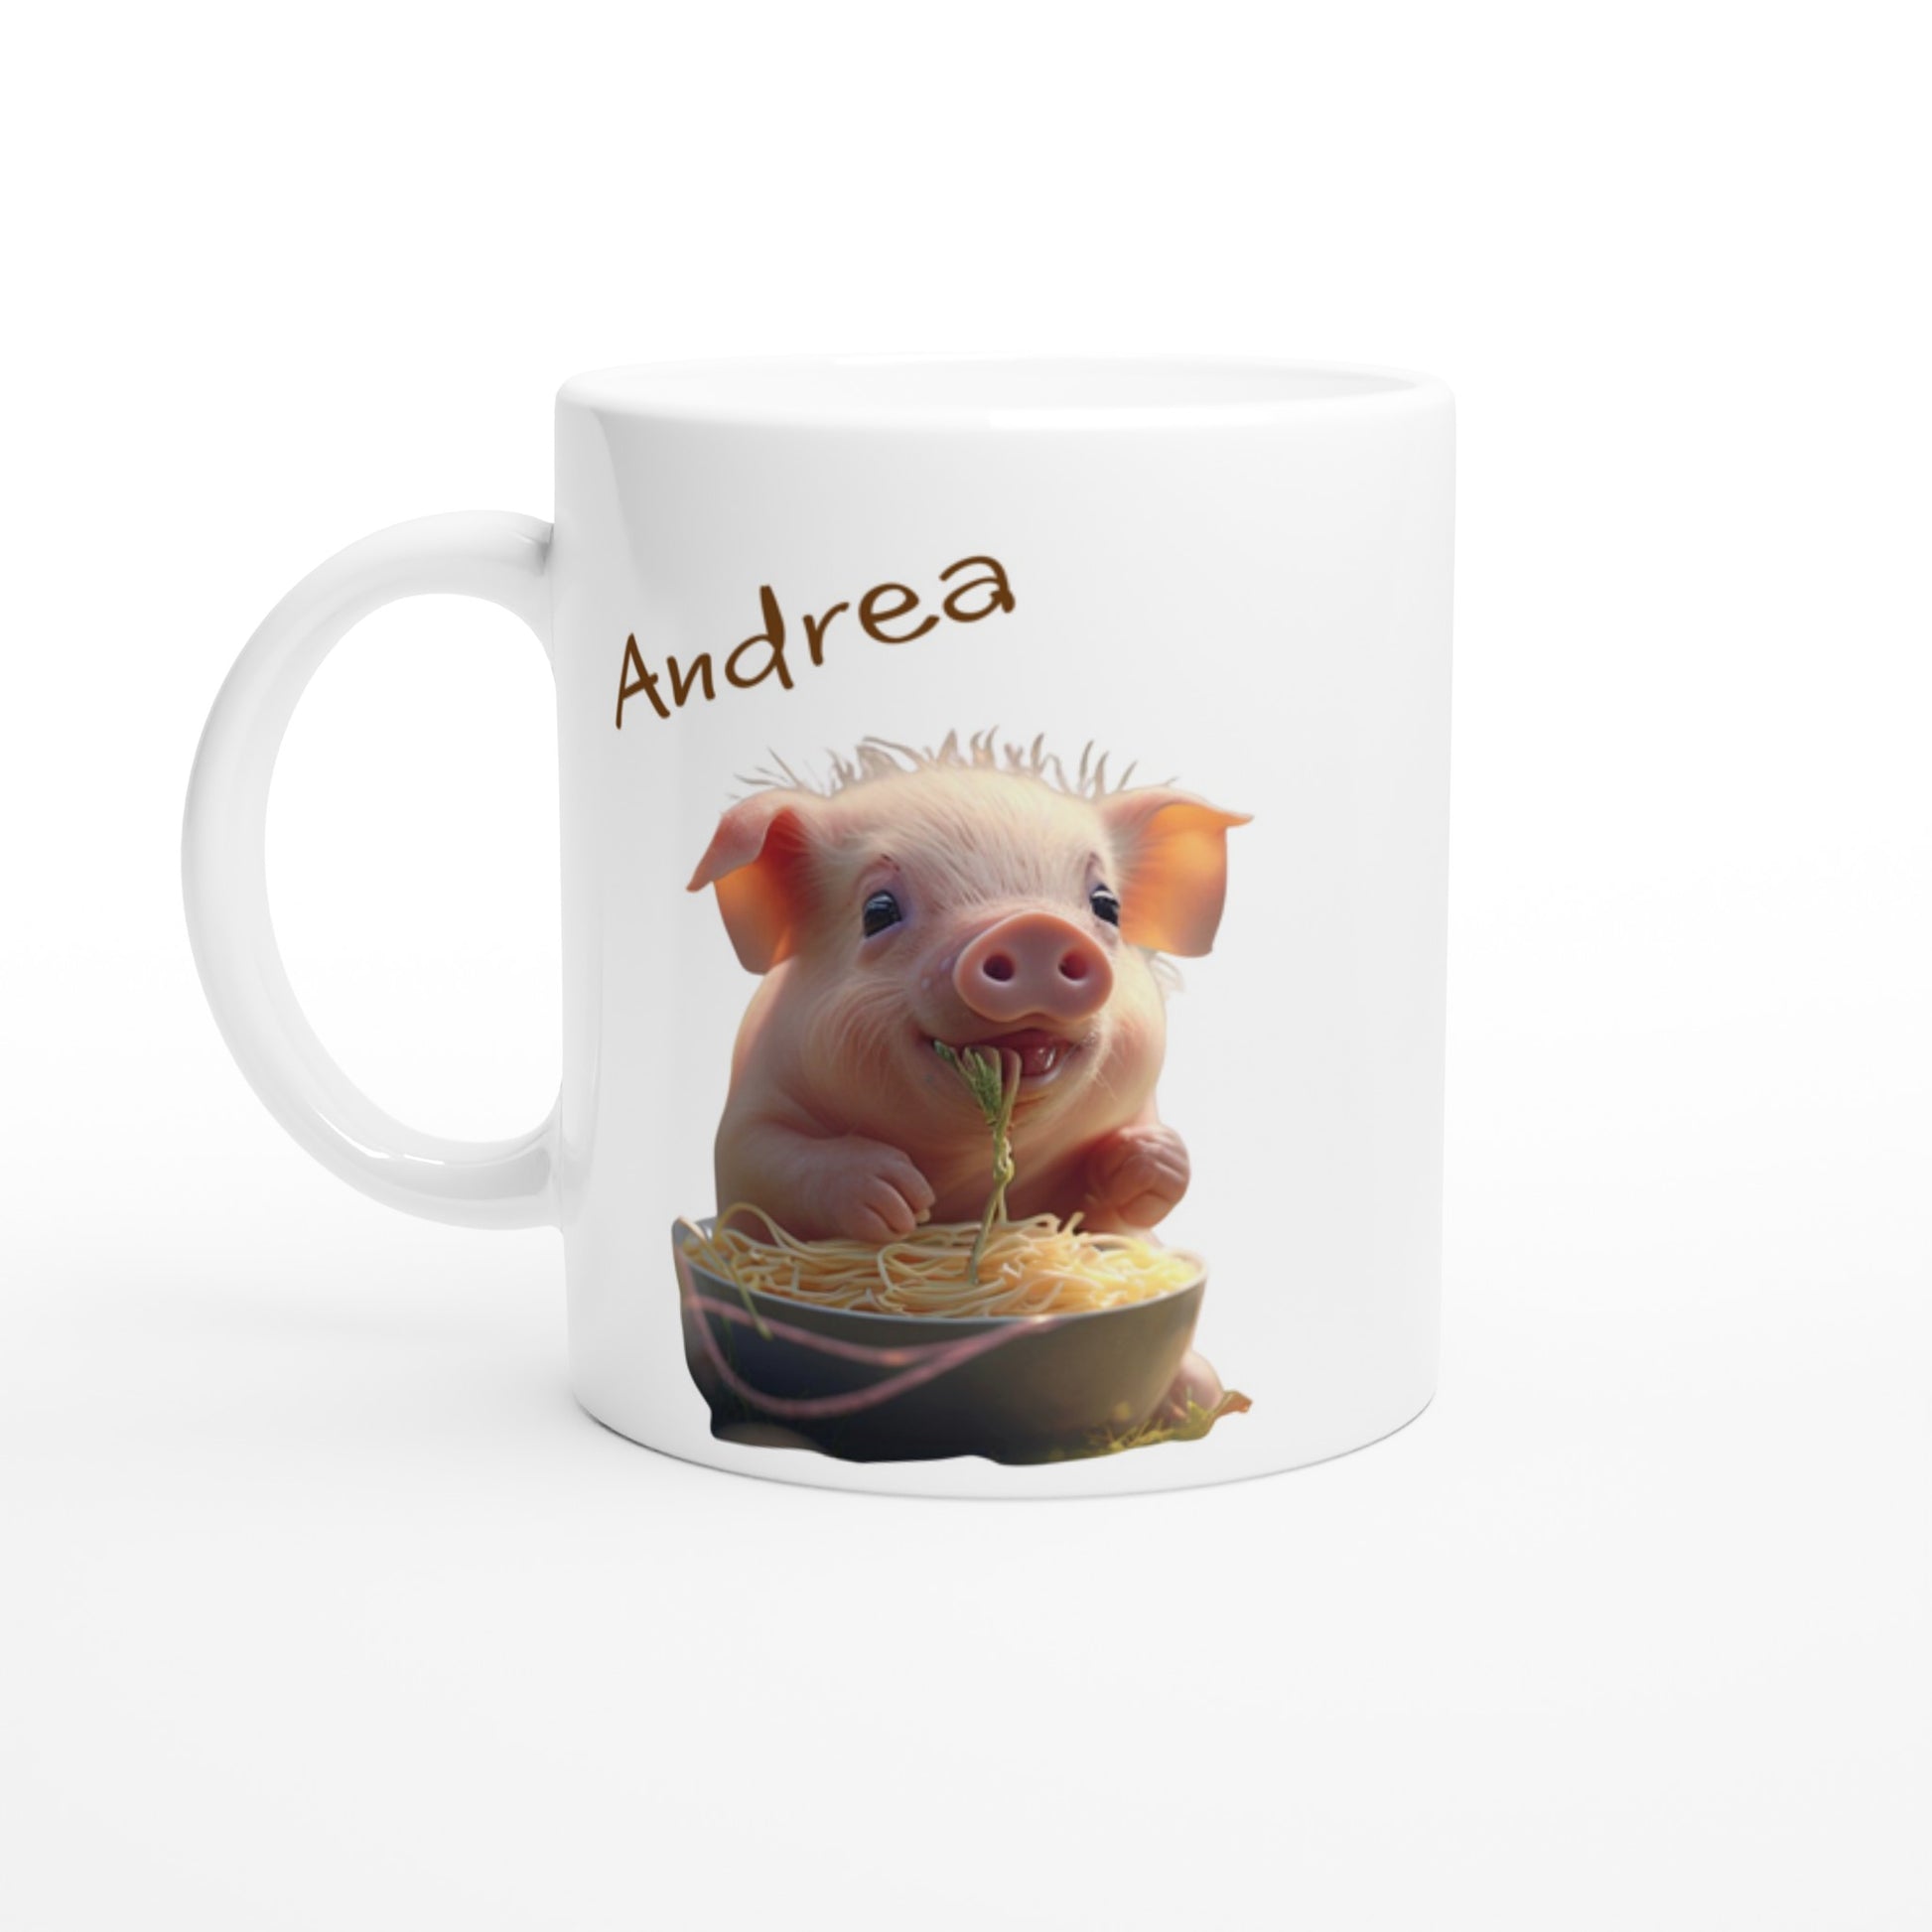 Pig mug with name on it